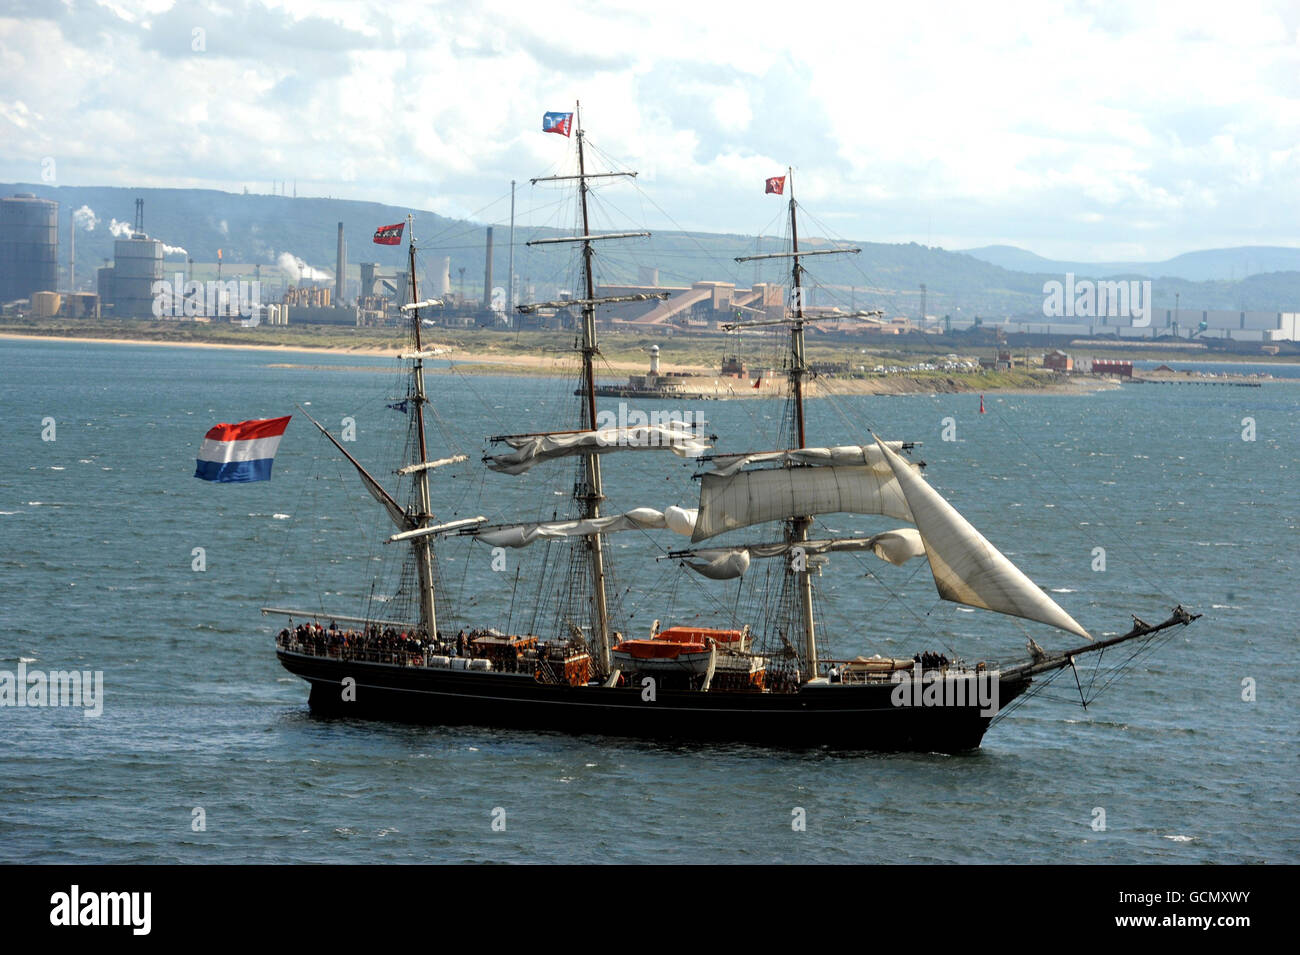 Los Tallships comienzan a salir del puerto deportivo de Hartlepool hoy después del festival de cuatro días después de la finalización de la carrera final de Kristiansand en Noruega. Foto de stock